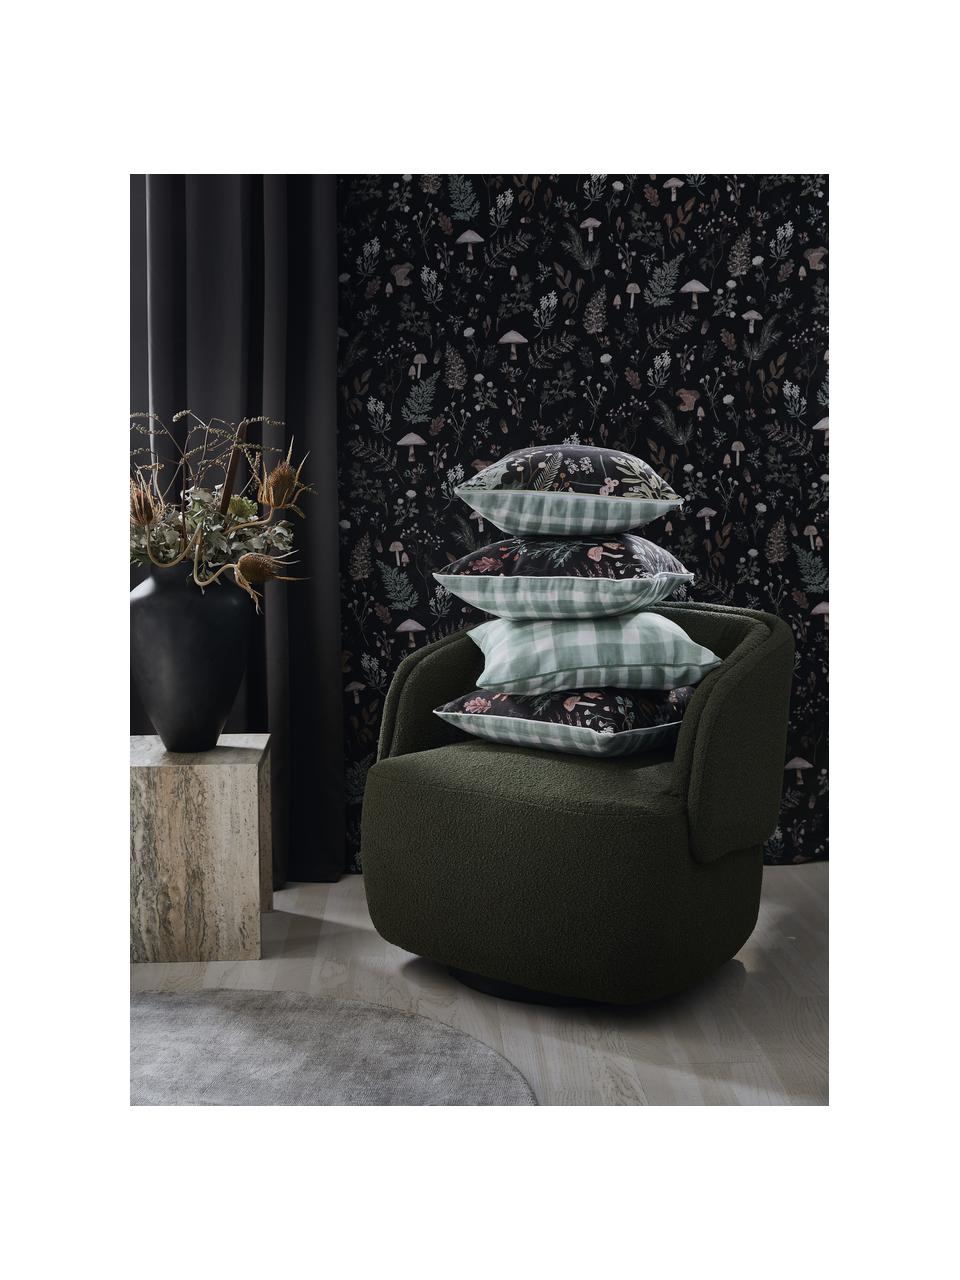 Dwustronna poszewka na poduszkę Mushroom od Candice Gray, 100% bawełna, certyfikat GOTS, Wielobarwny, S 45 x D 45 cm